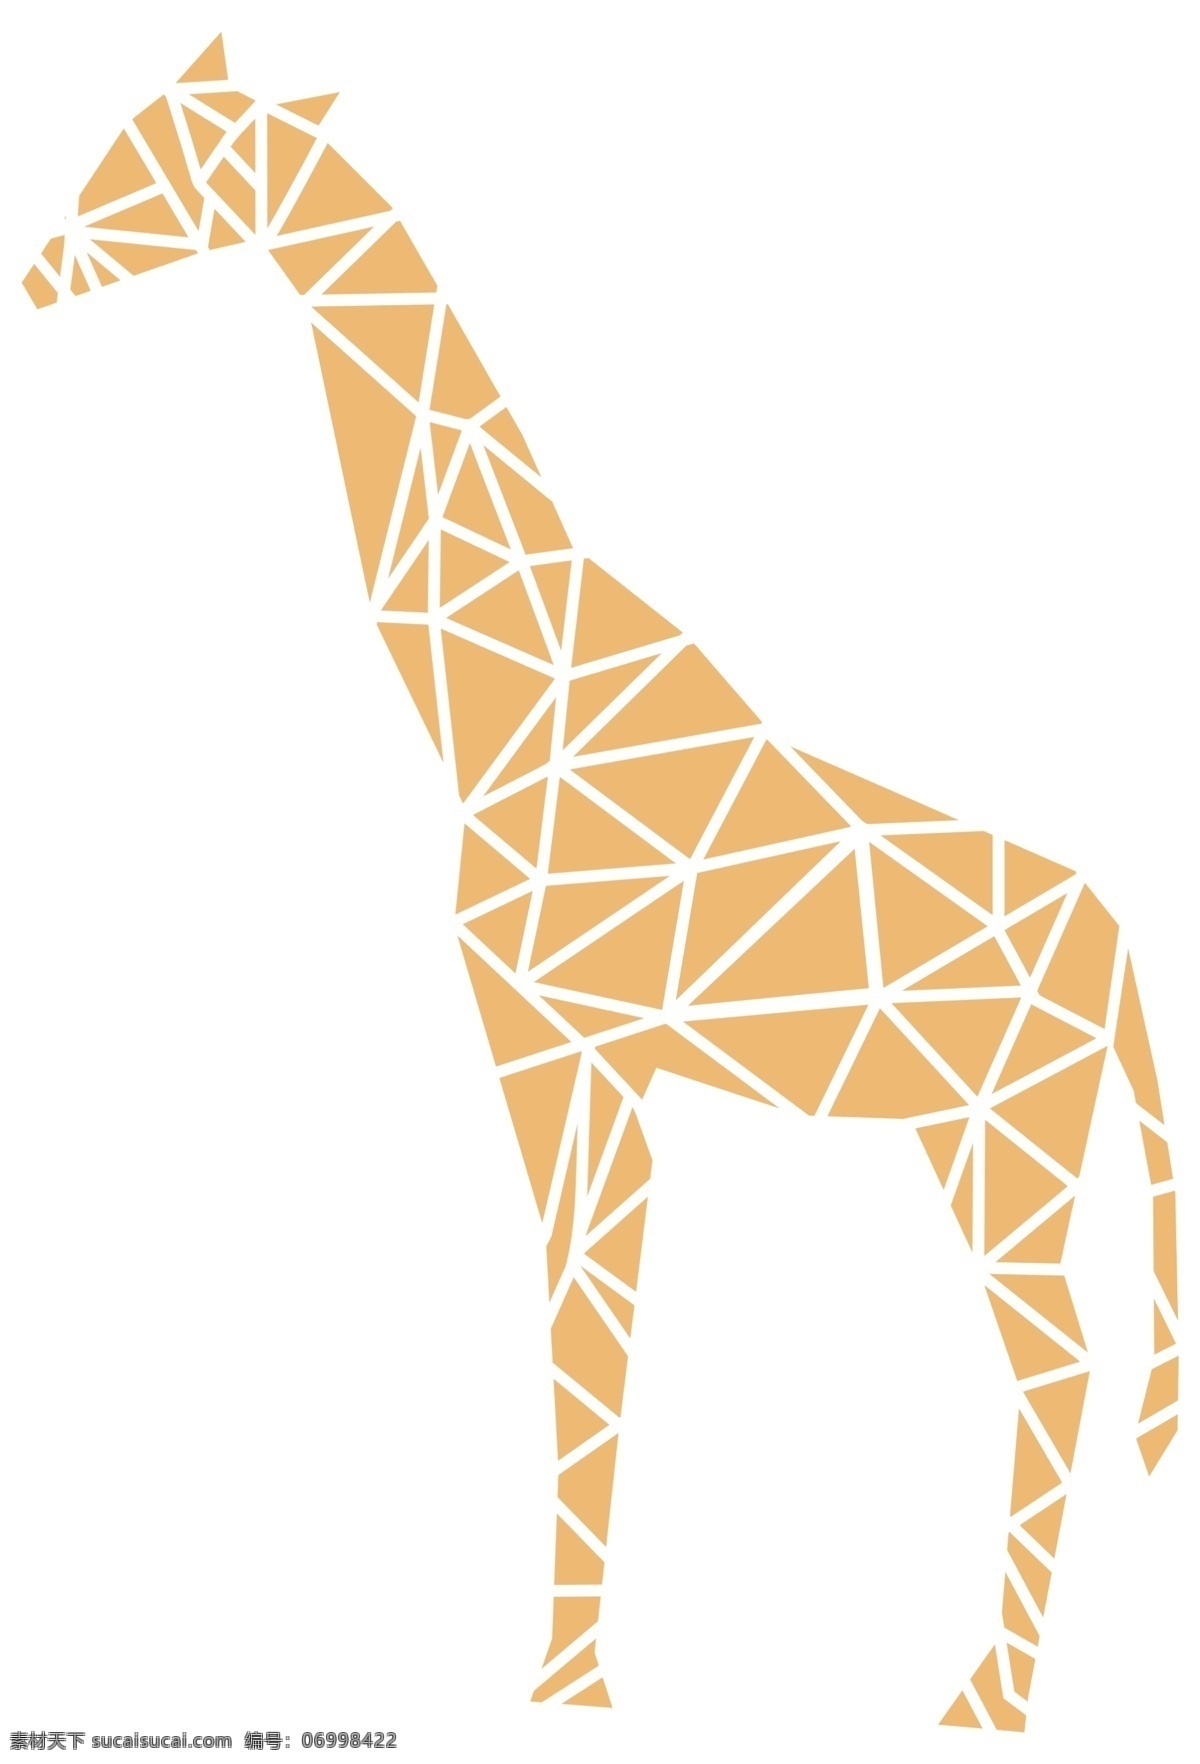 几何 块 图案 长颈鹿 高清 图 卡通长颈鹿 长颈鹿图案 长颈鹿素材 鹿 生物世界 野生动物